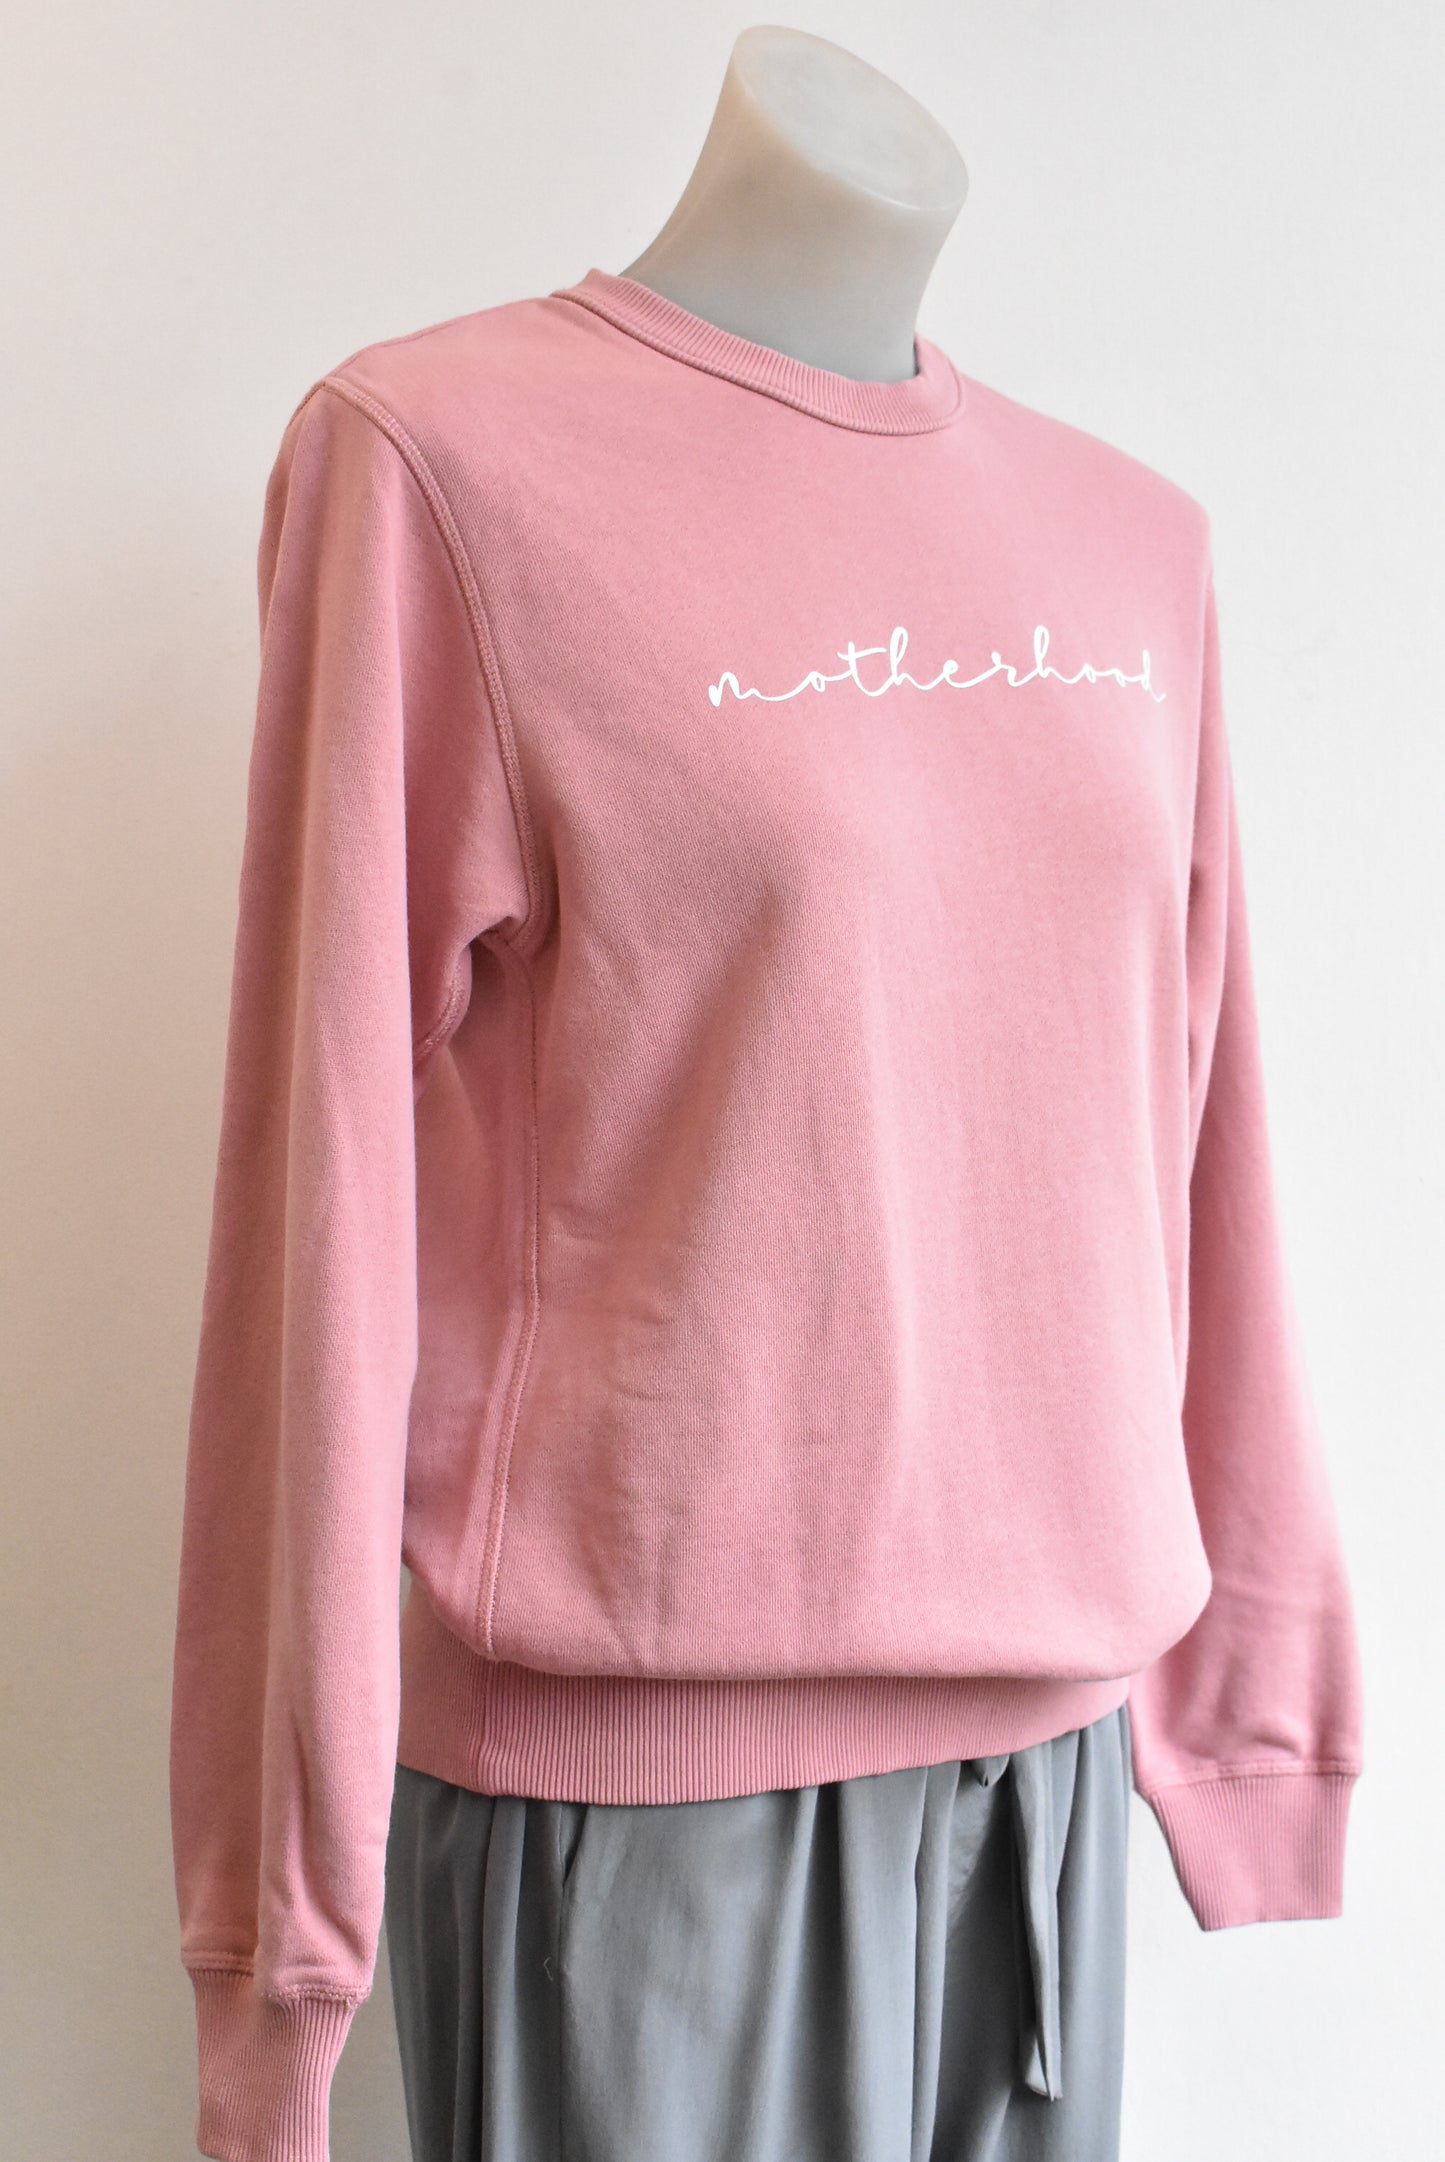 Hallo Brody pink 'motherhood' sweatshirt, size XSM